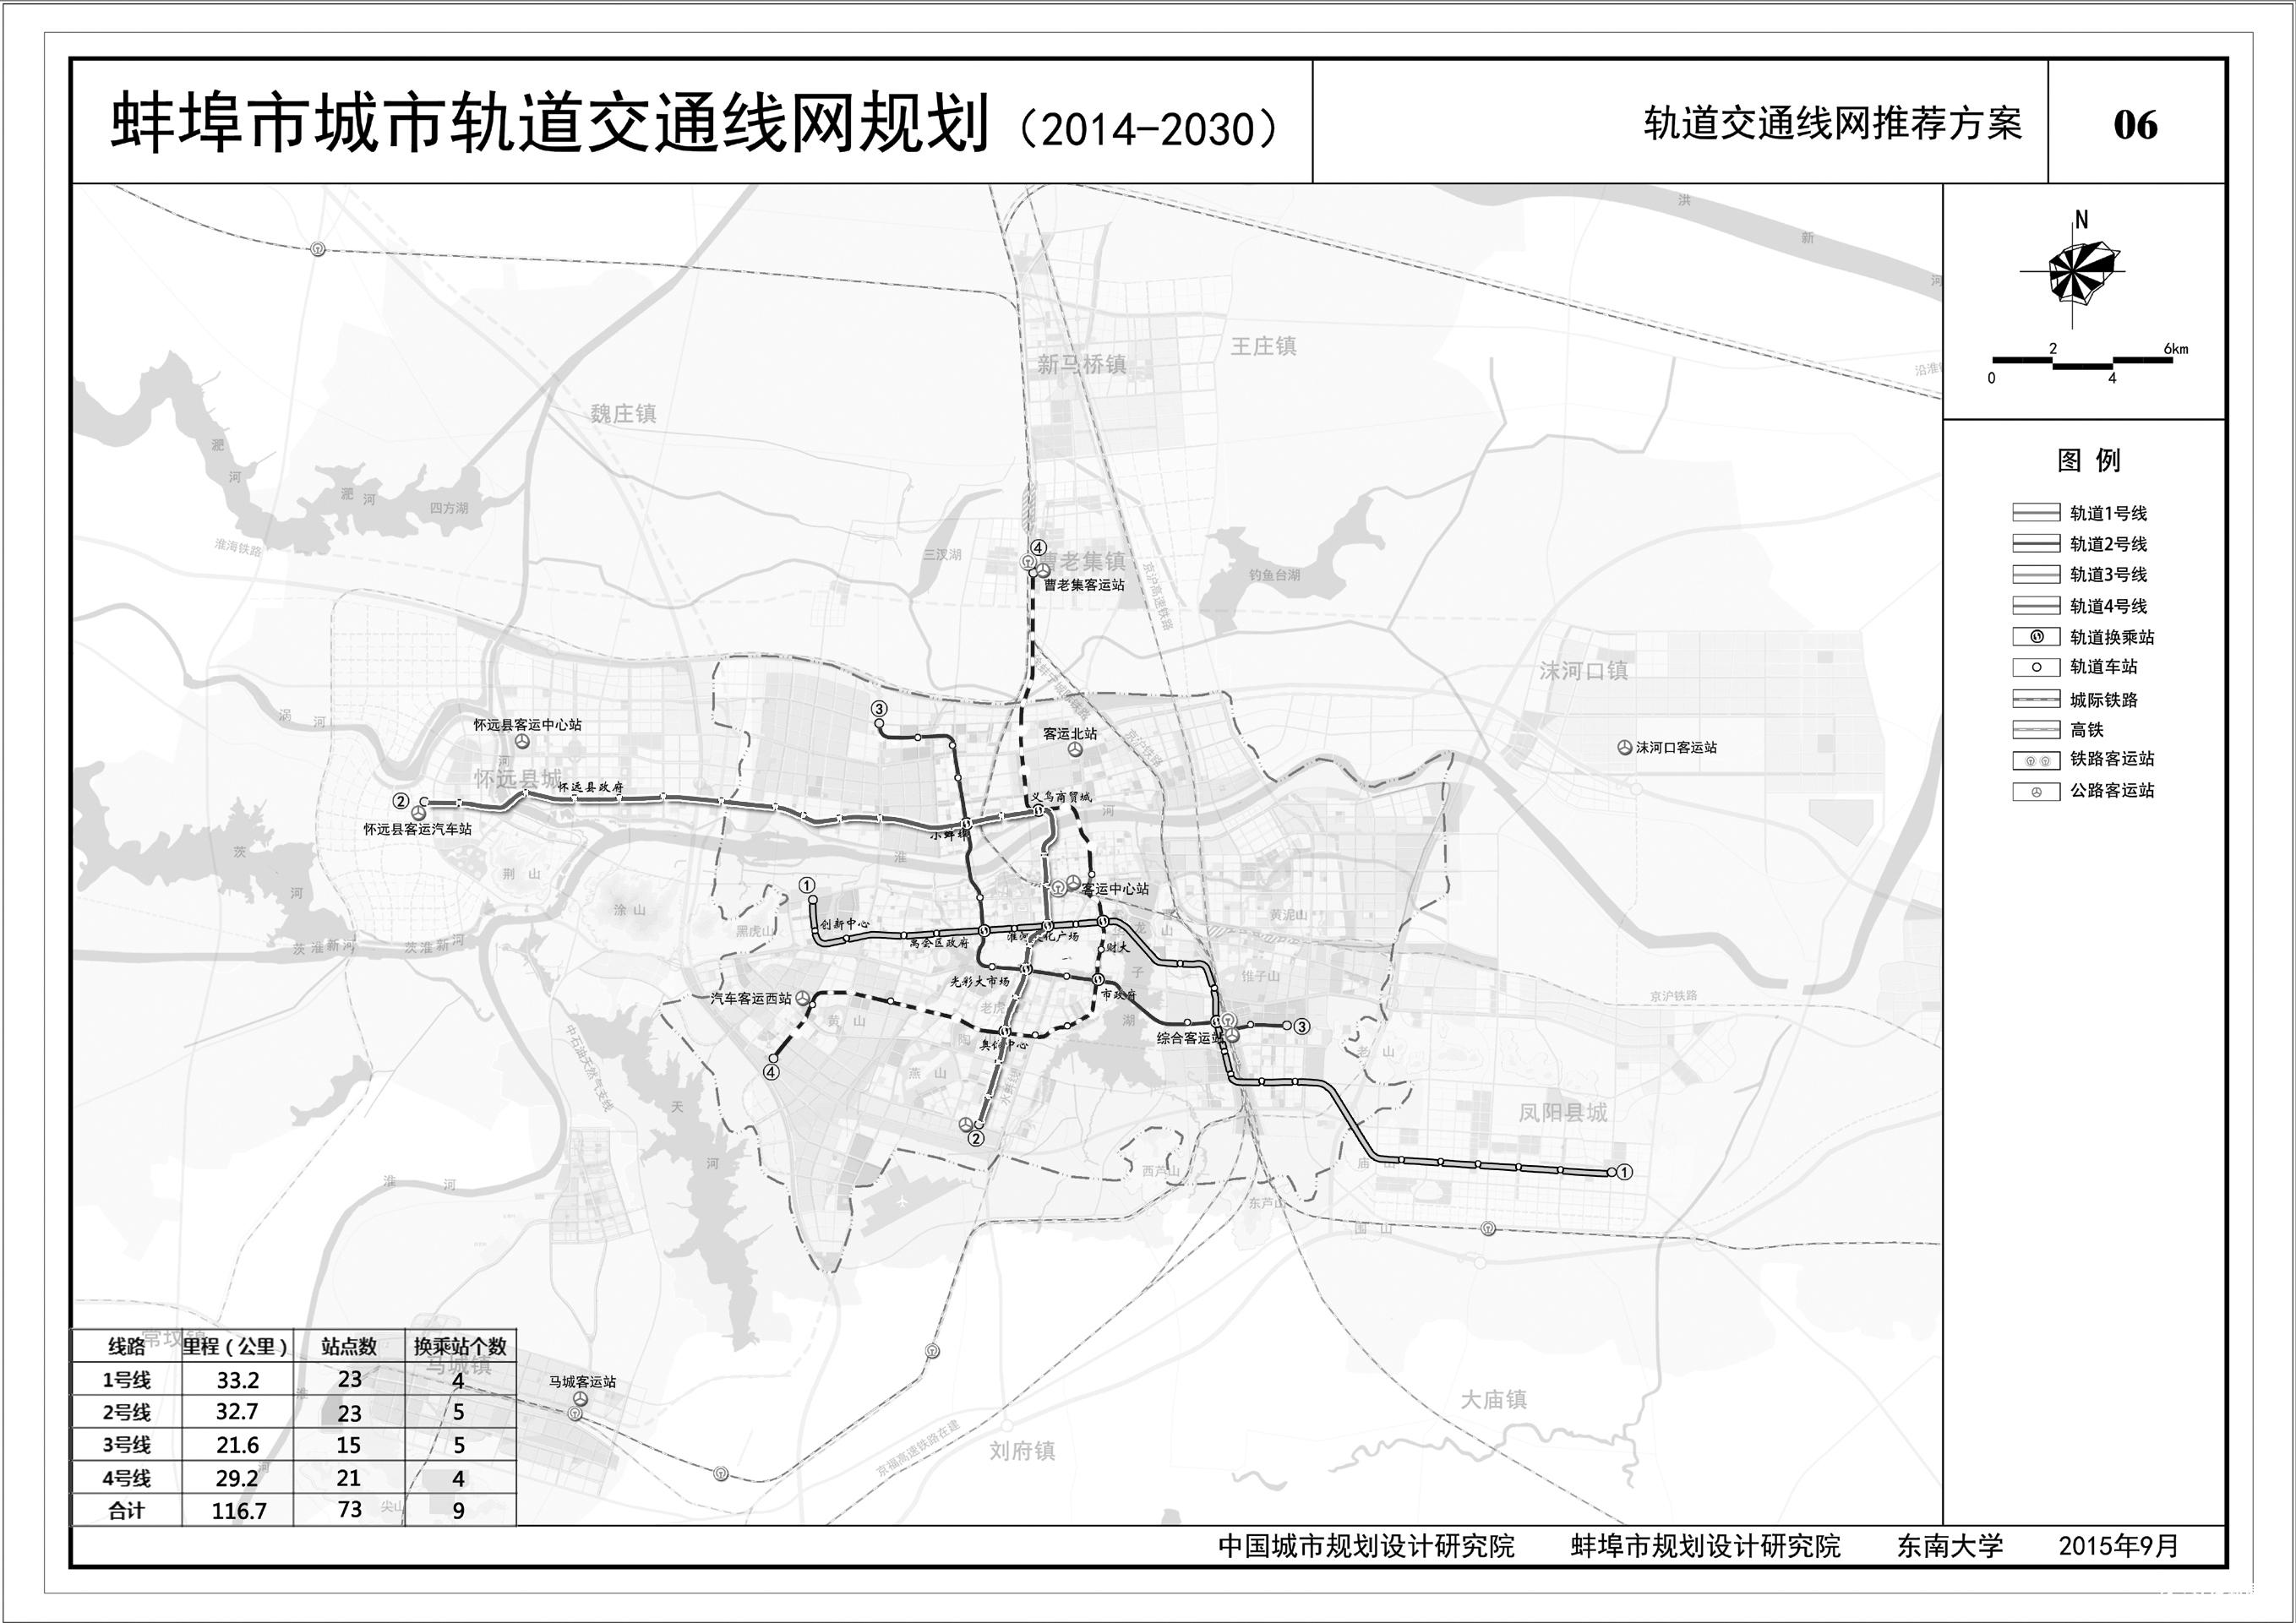 蚌埠市规划建设4条轨道交通线路 或将带高周边房价